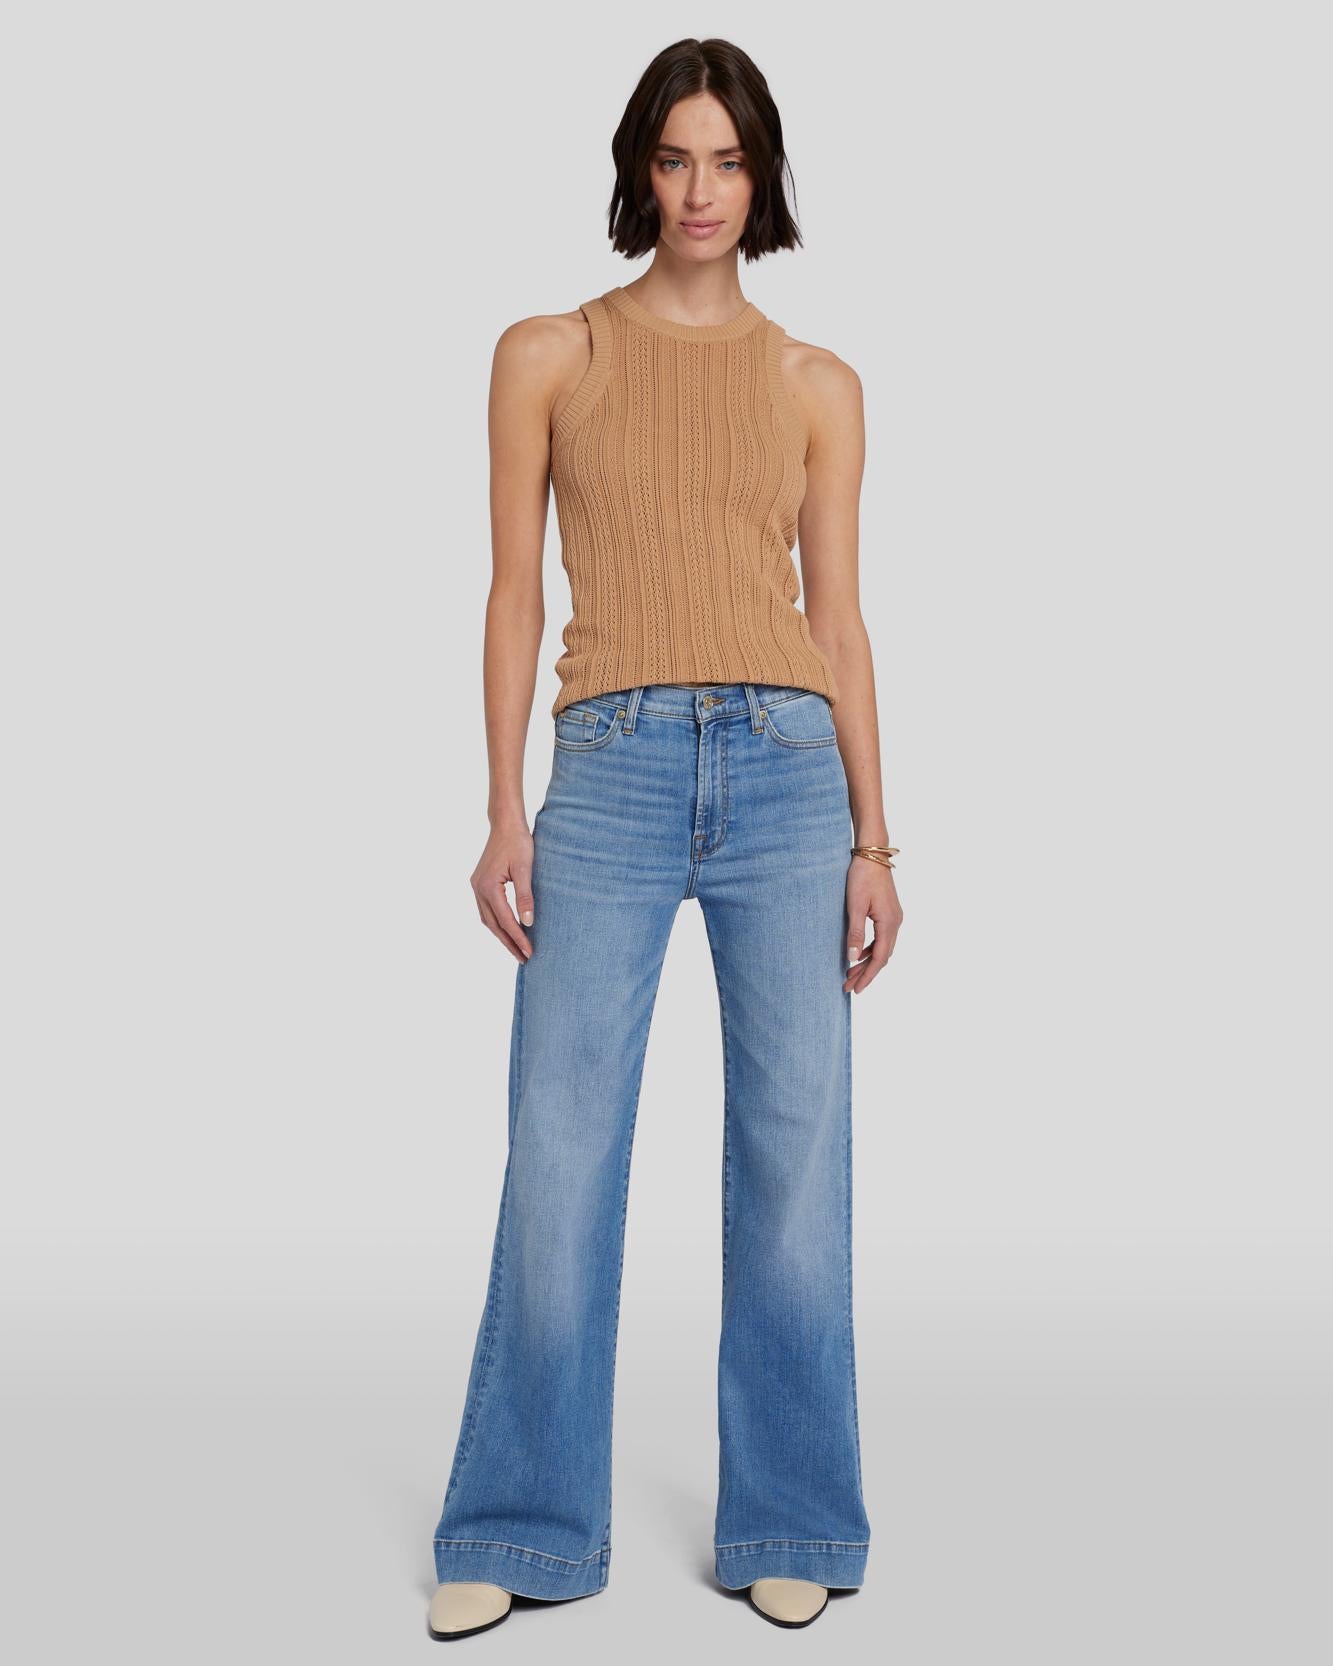 Women's High Waist Jeans- Denim for Women